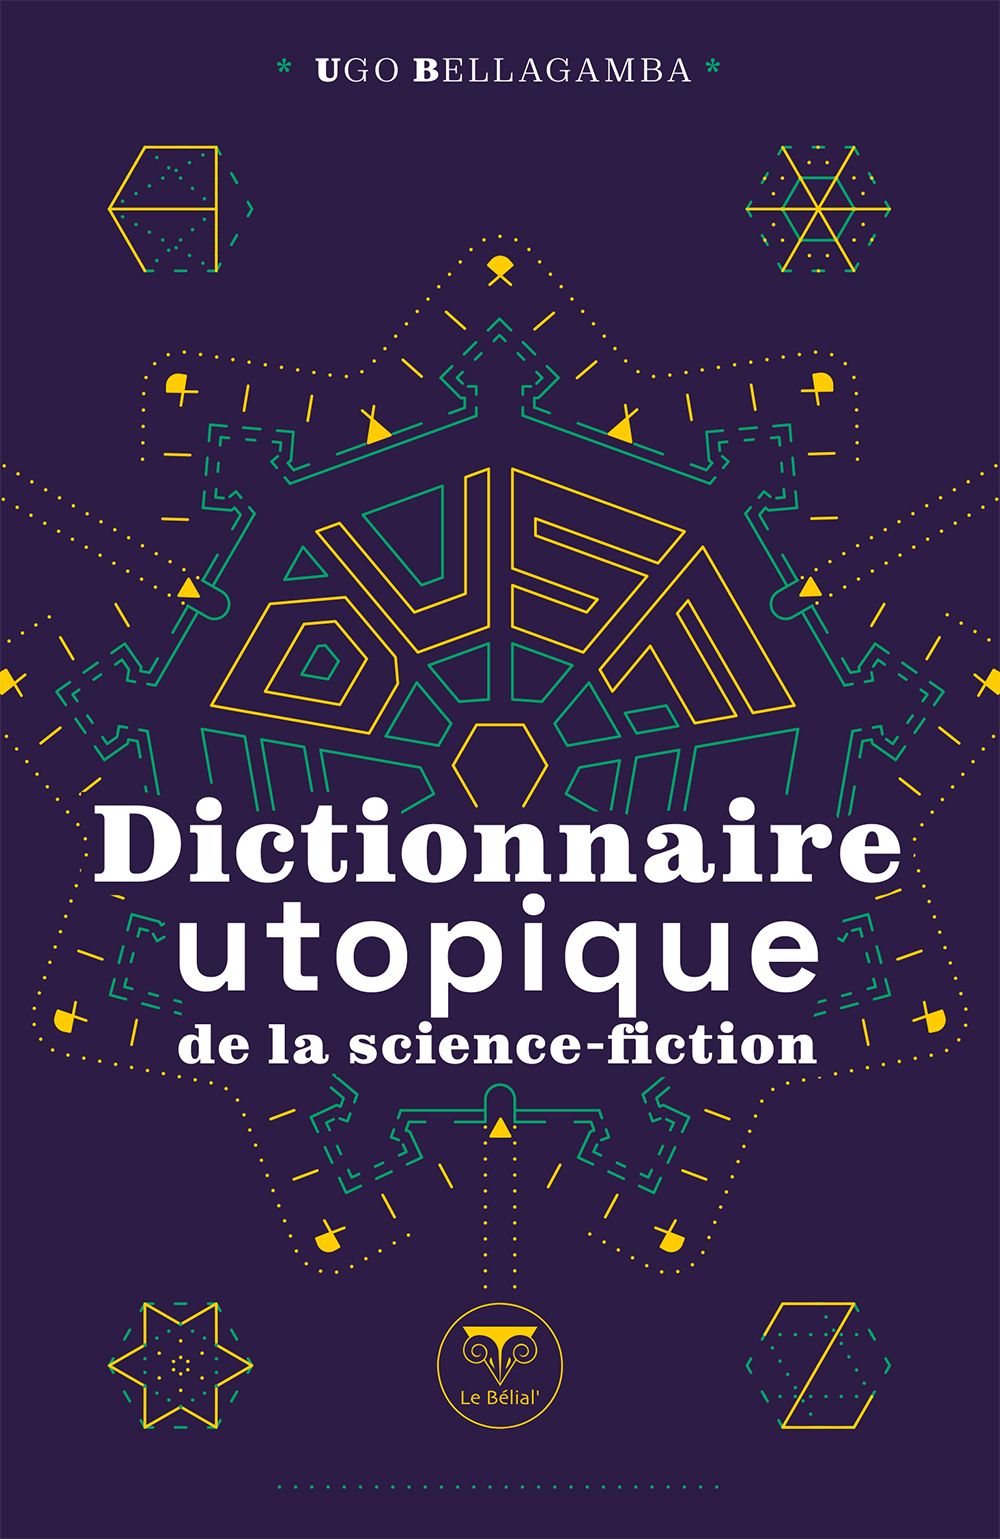 Dictionnaire utopique d’Ugo Bellagamba